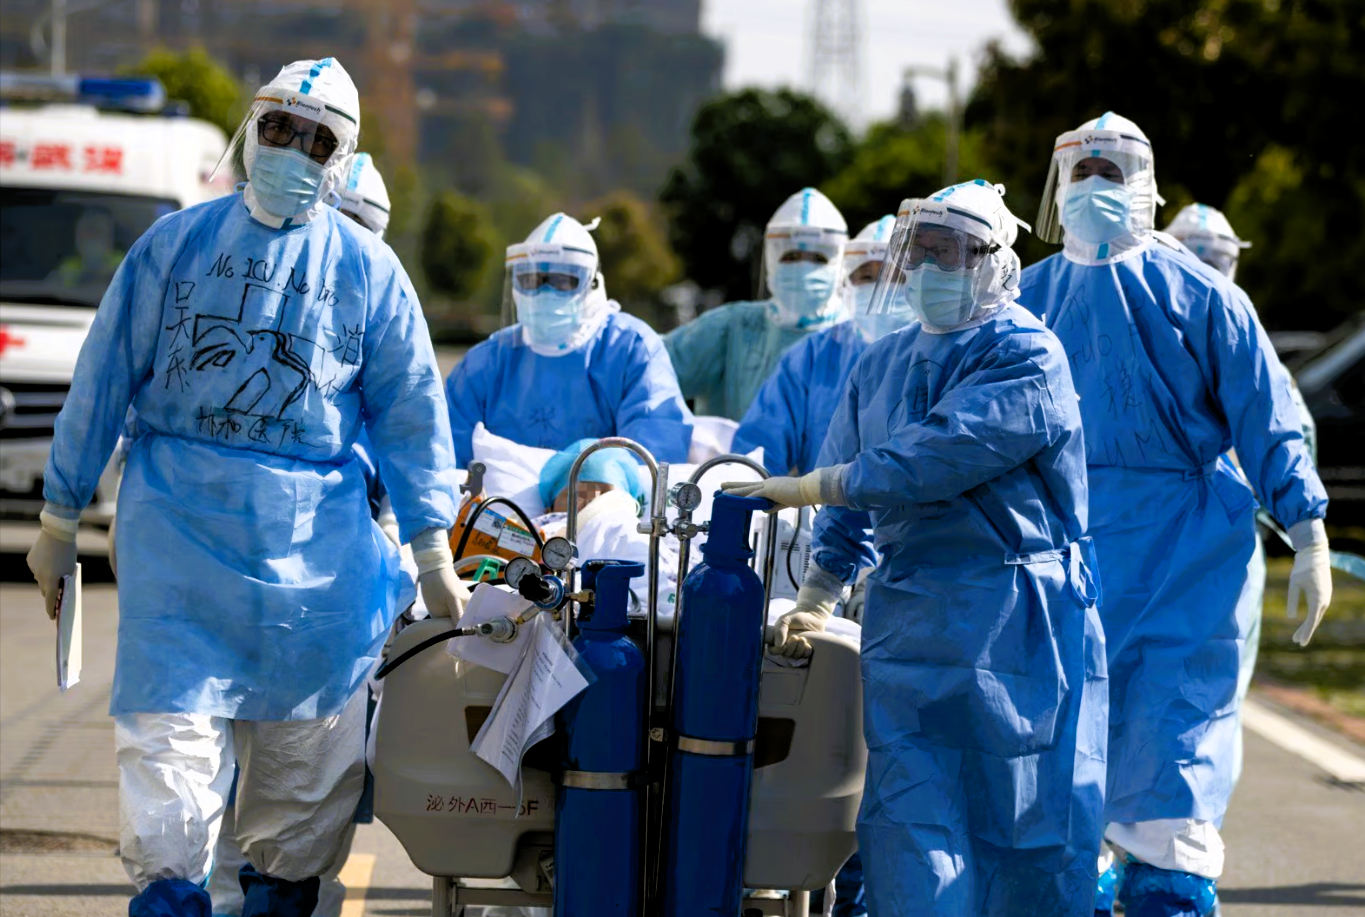 Dringende WHO-Warnung: Tödlicher Virenausbruch ohne bisherige Heilungsmöglichkeit - Pandemie-Alarm!